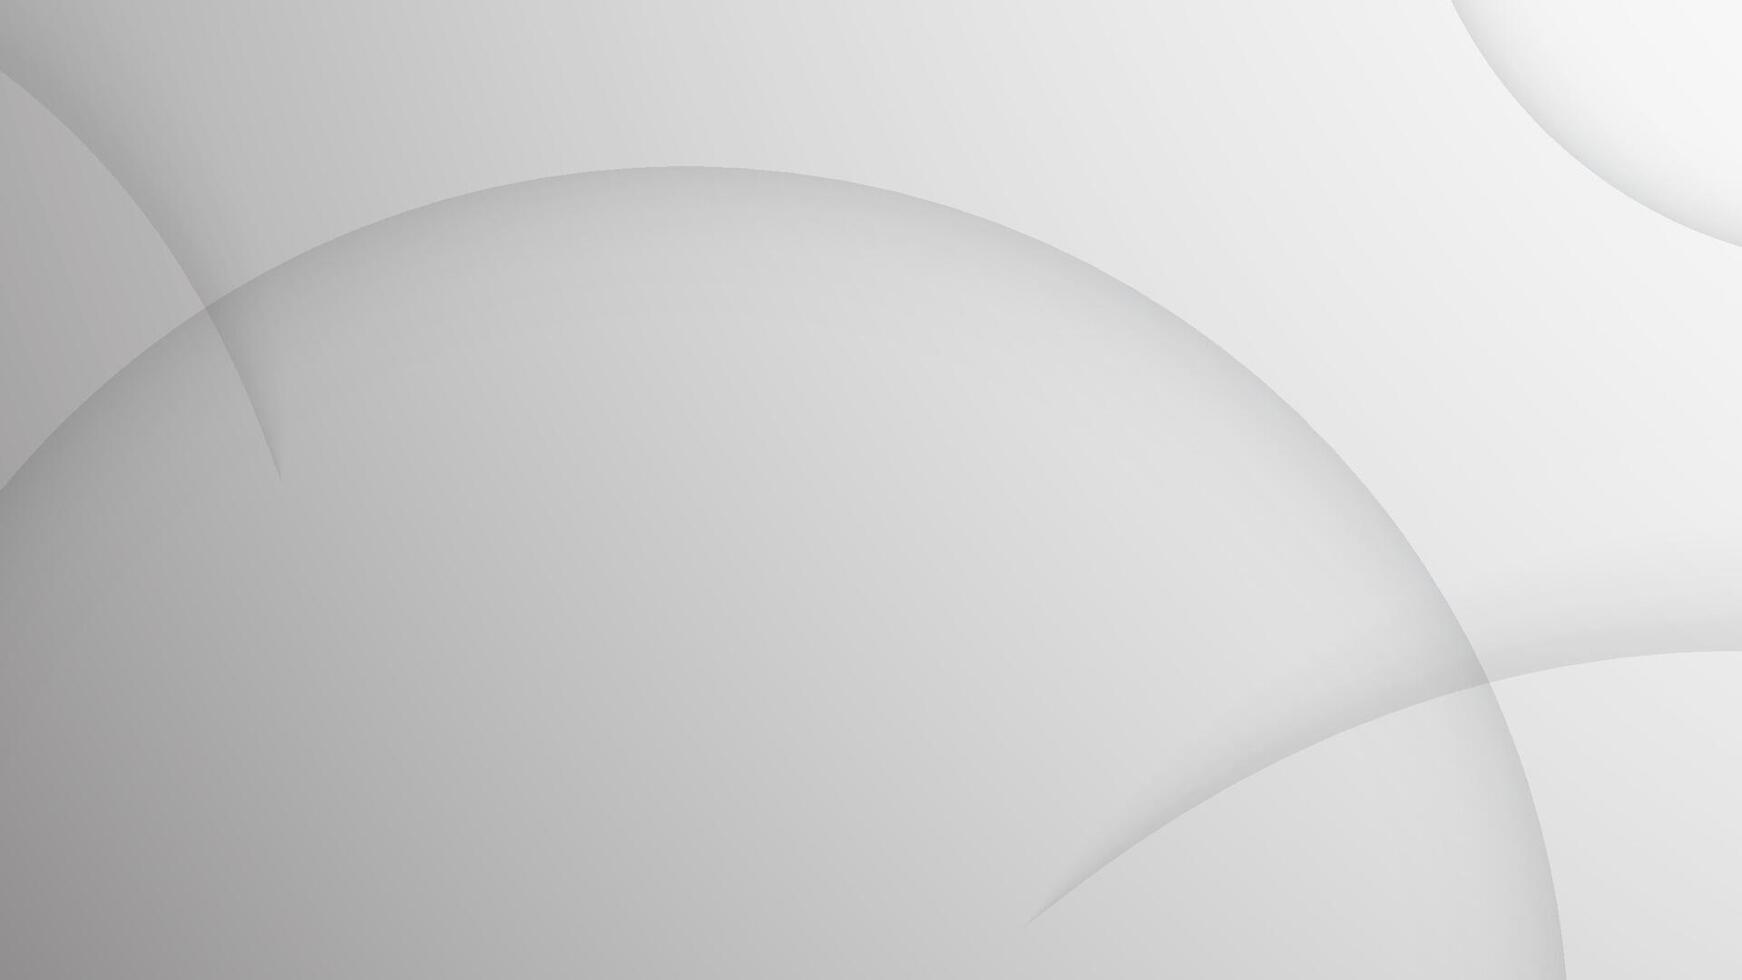 abstrakt schwarz und Weiß Hintergrund mit unglaublich Schatten Kurve. Vorlage Design zum Geschäft Präsentation, ui, Einladung Karte. vektor